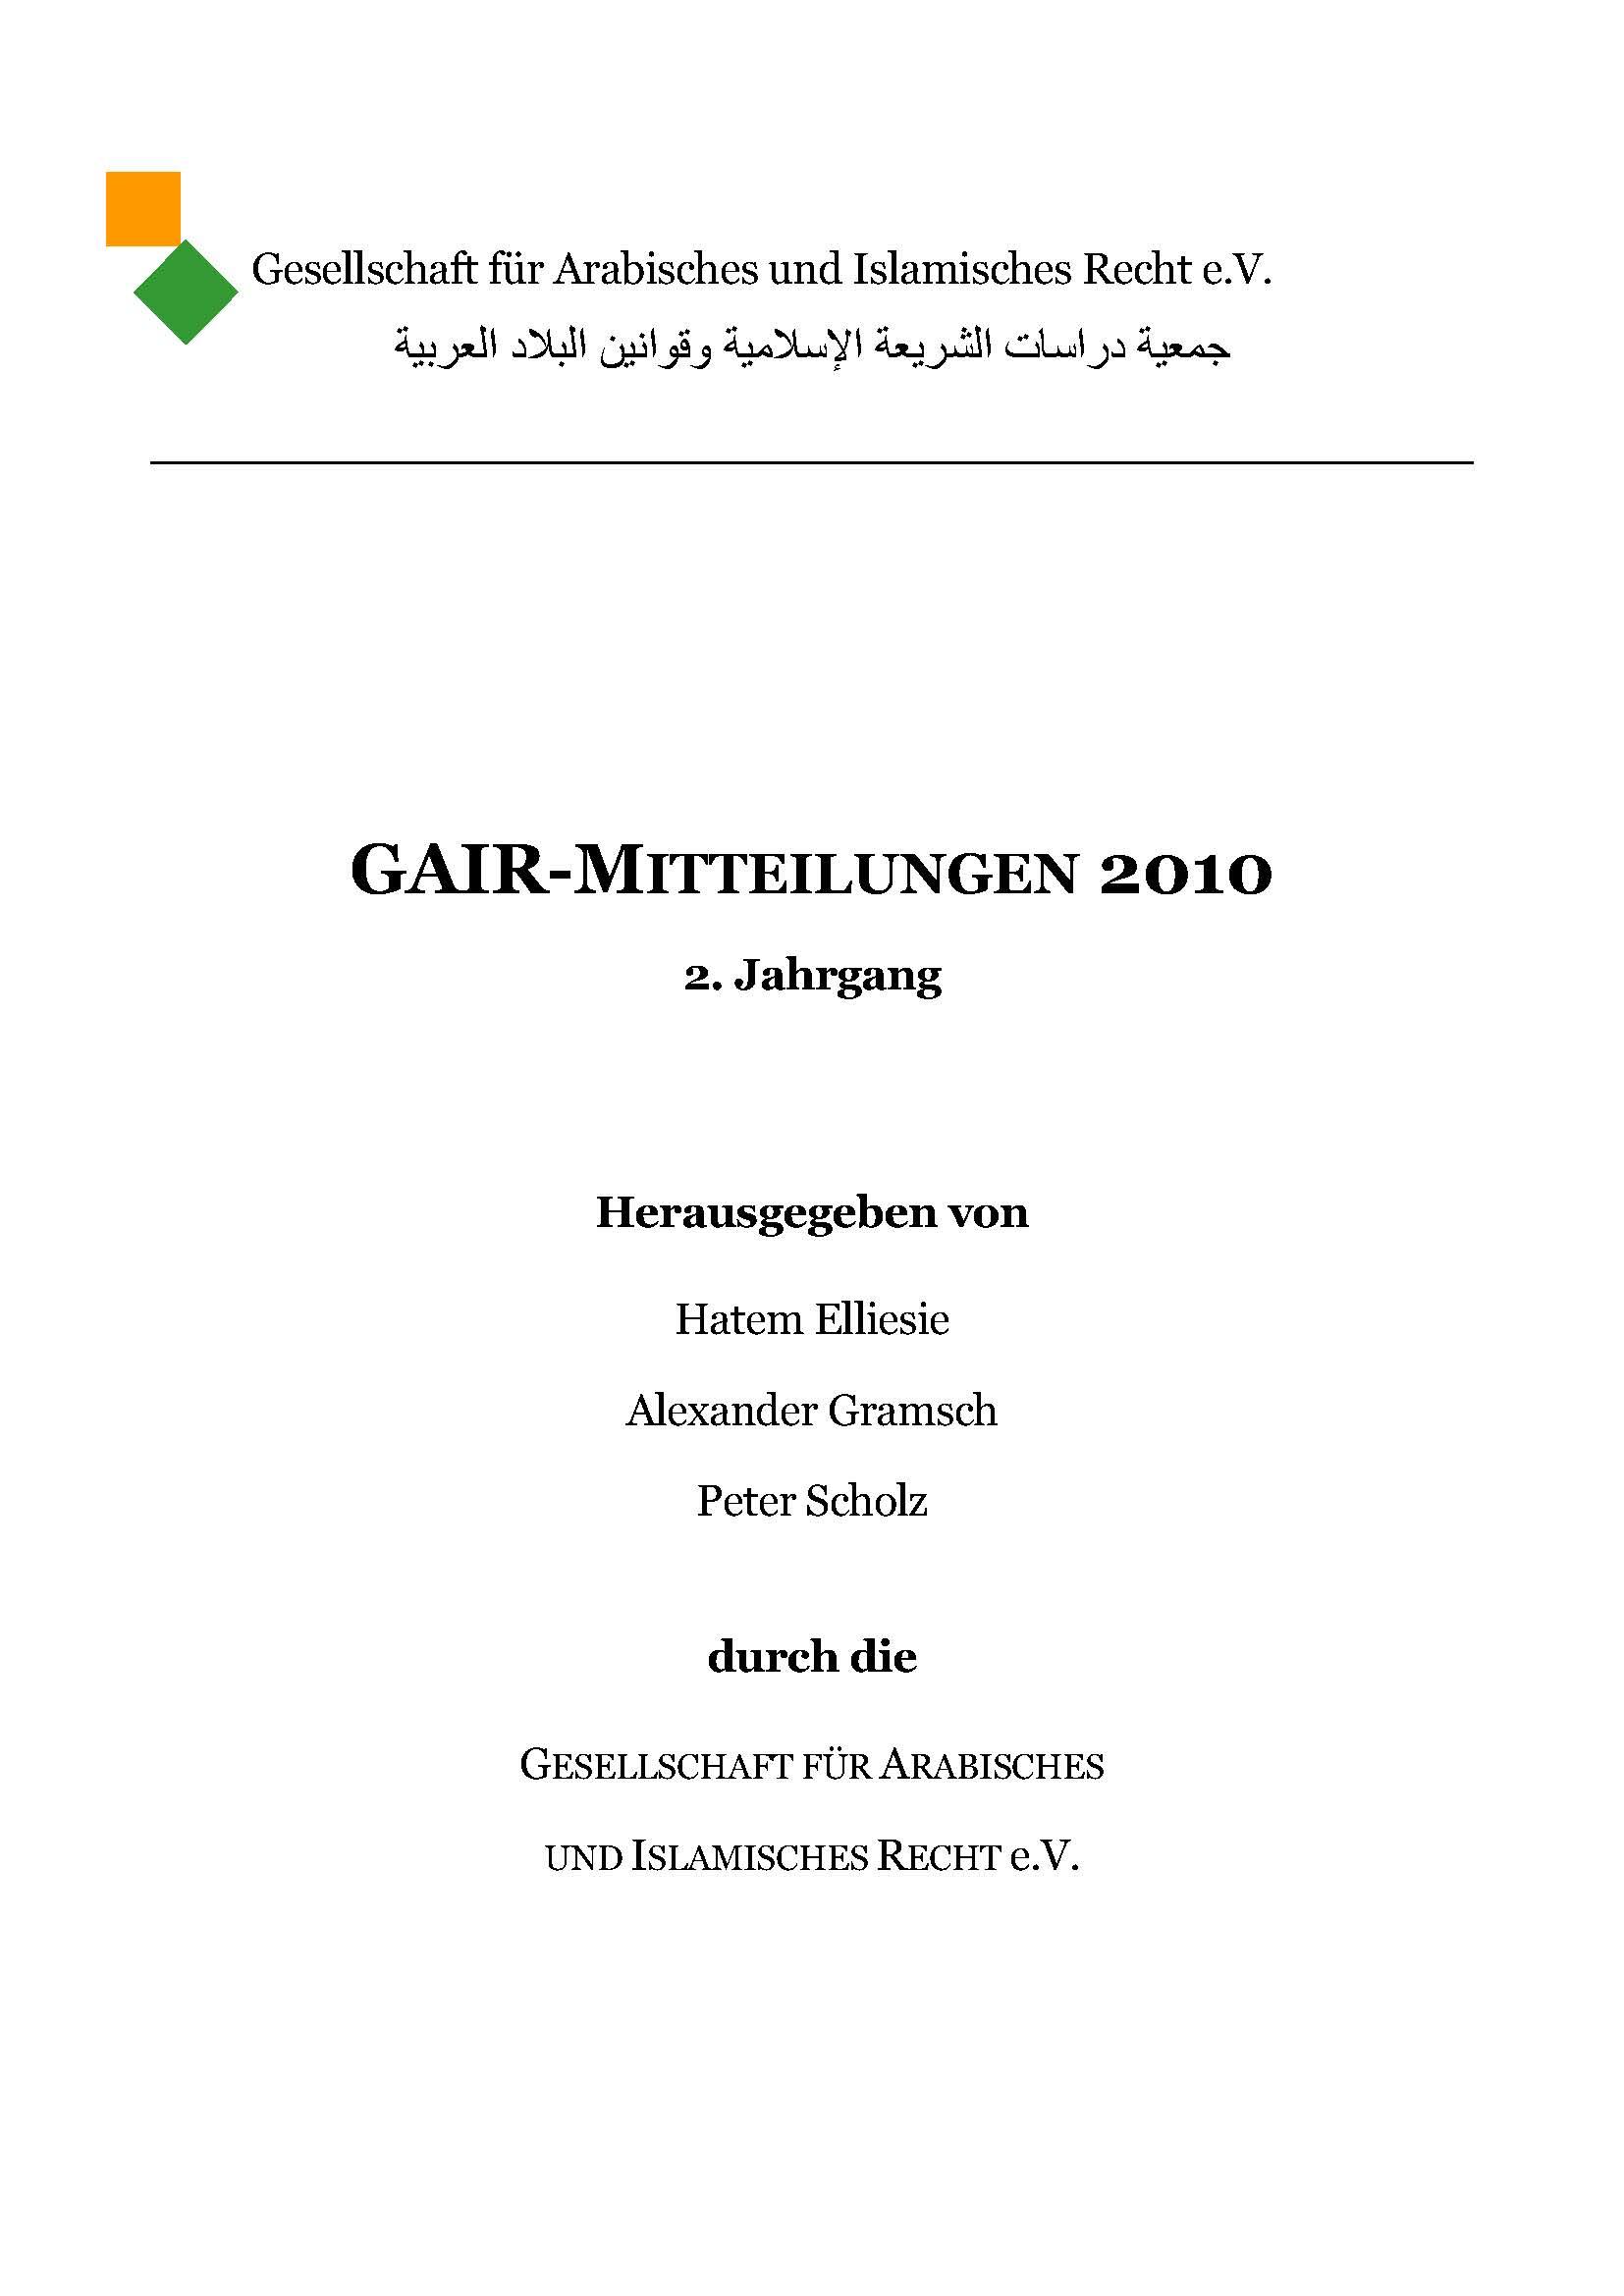 GAIR Mitteilungen (2)2010